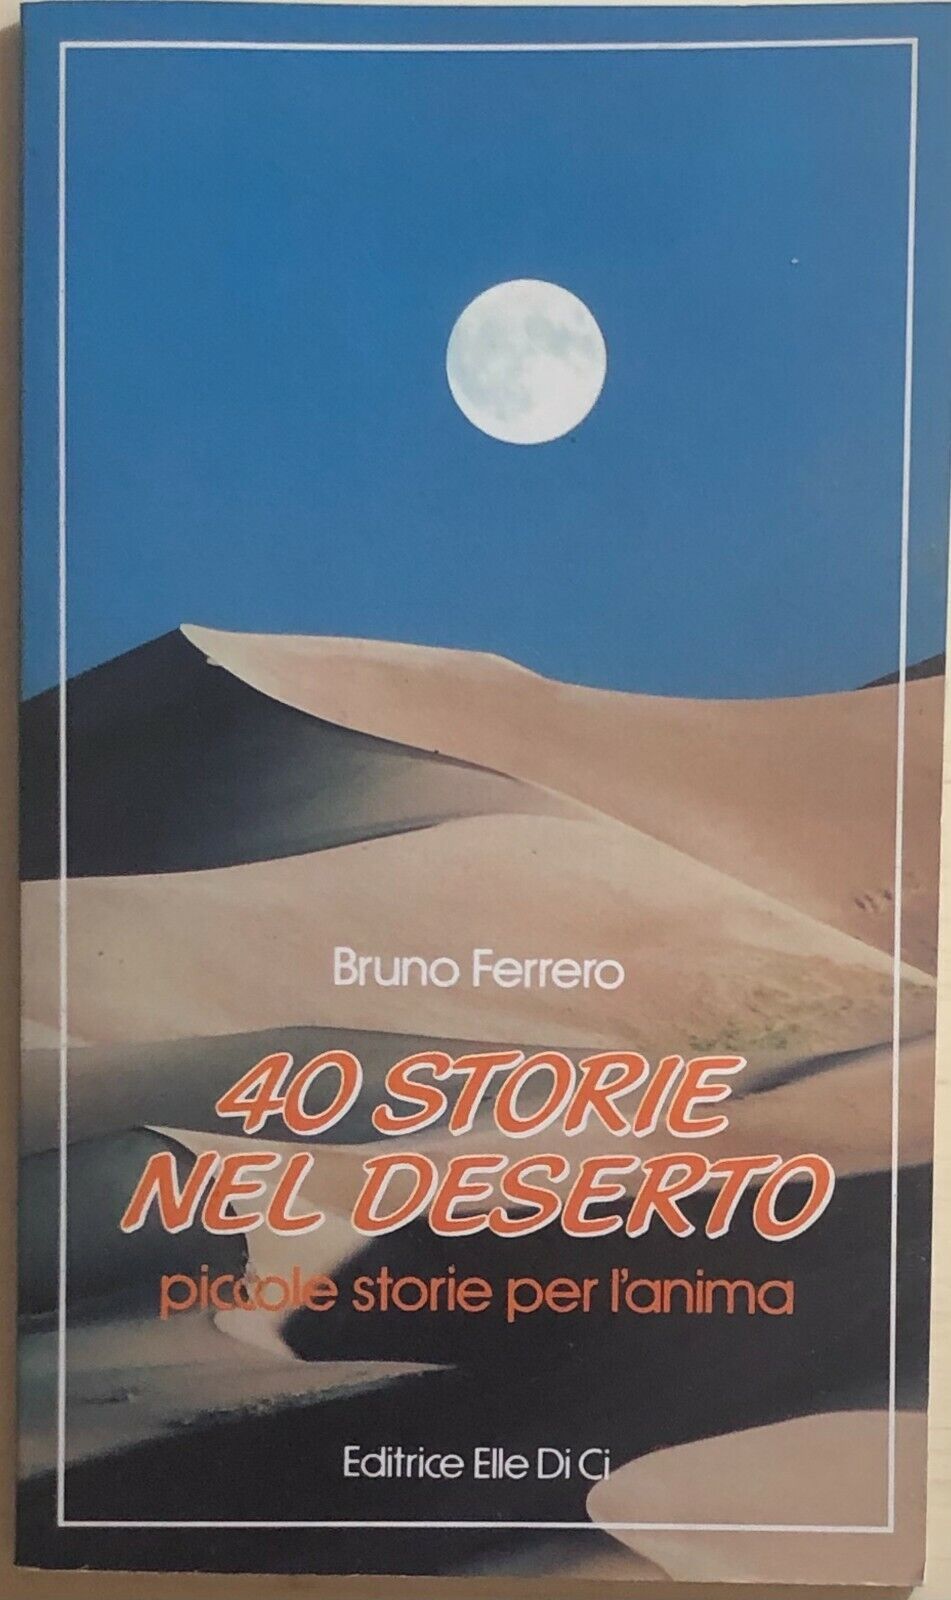 40 storie nel deserto di Bruno Ferrero, 1993, Elledici